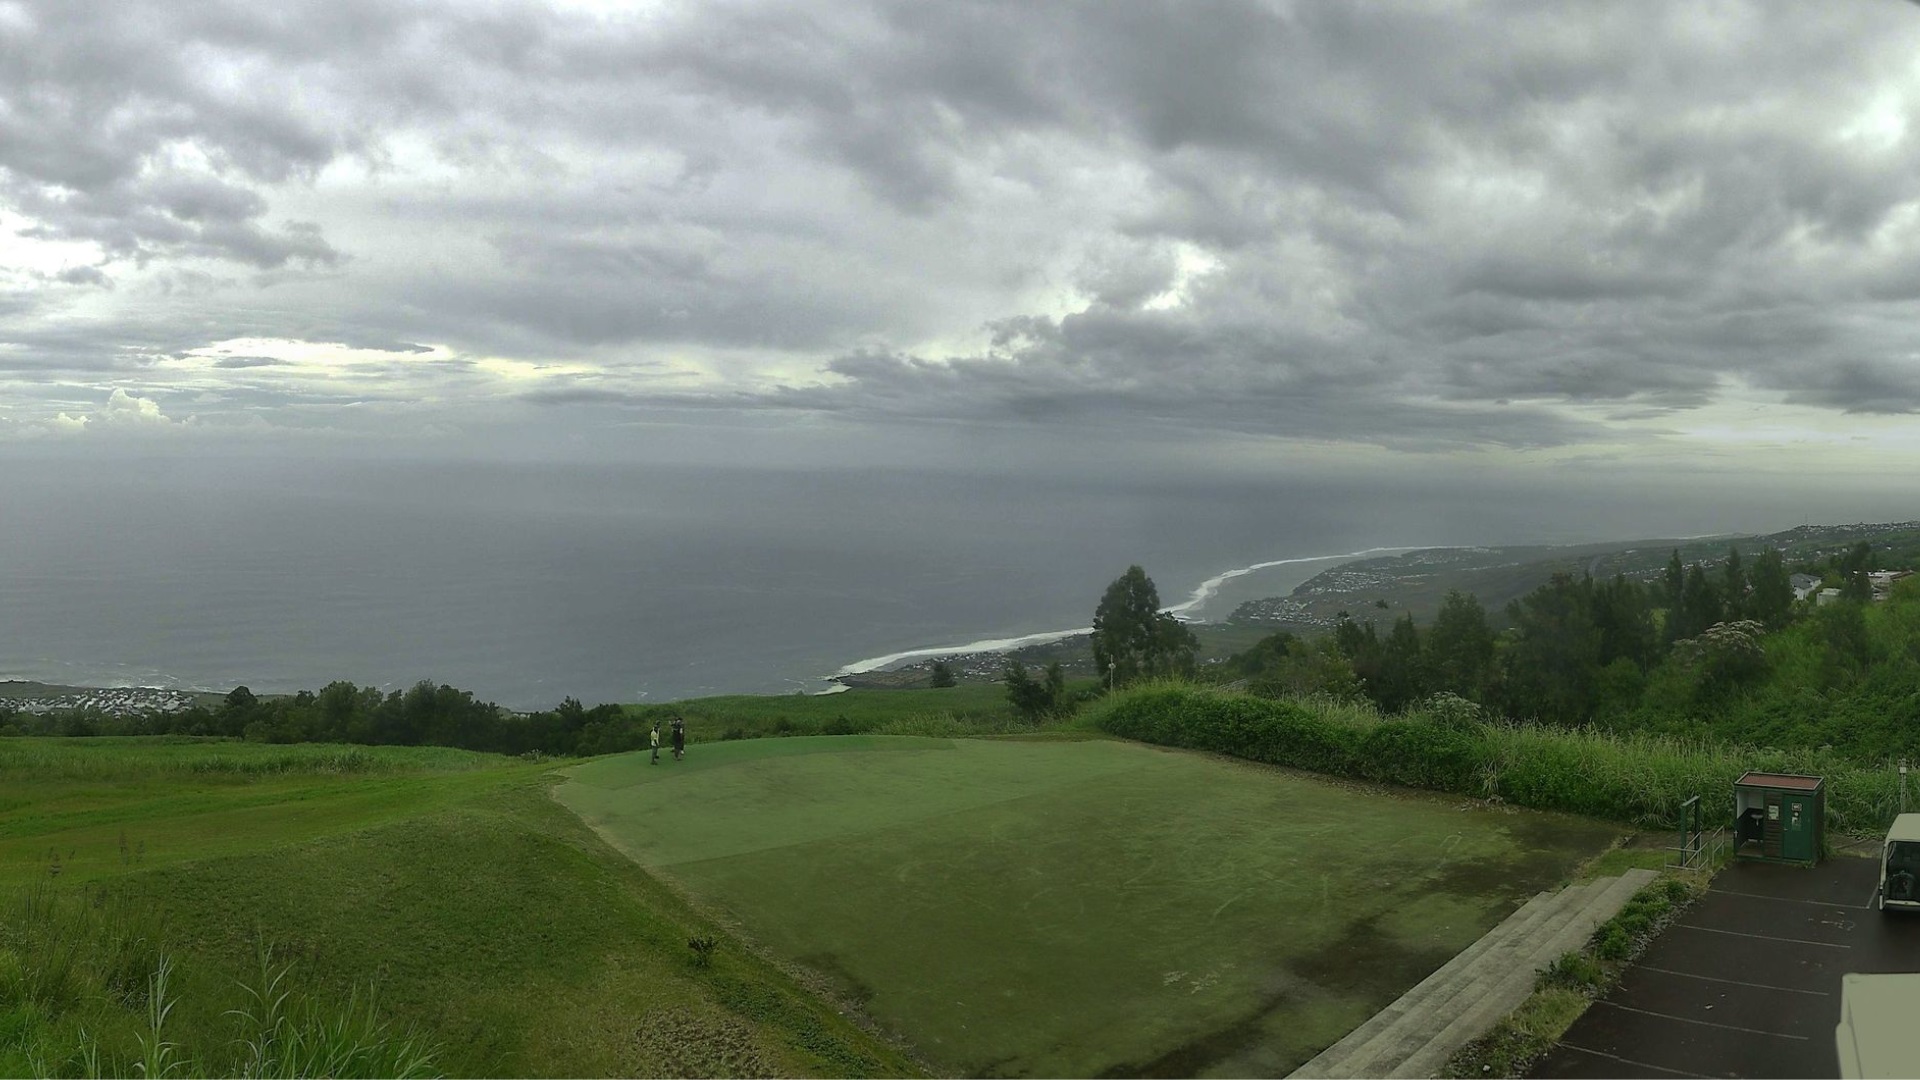 Ciel très nuageux ce matin dans l'ouest. Point de vue de Colimaçons. Crédit image: Météo Réunion